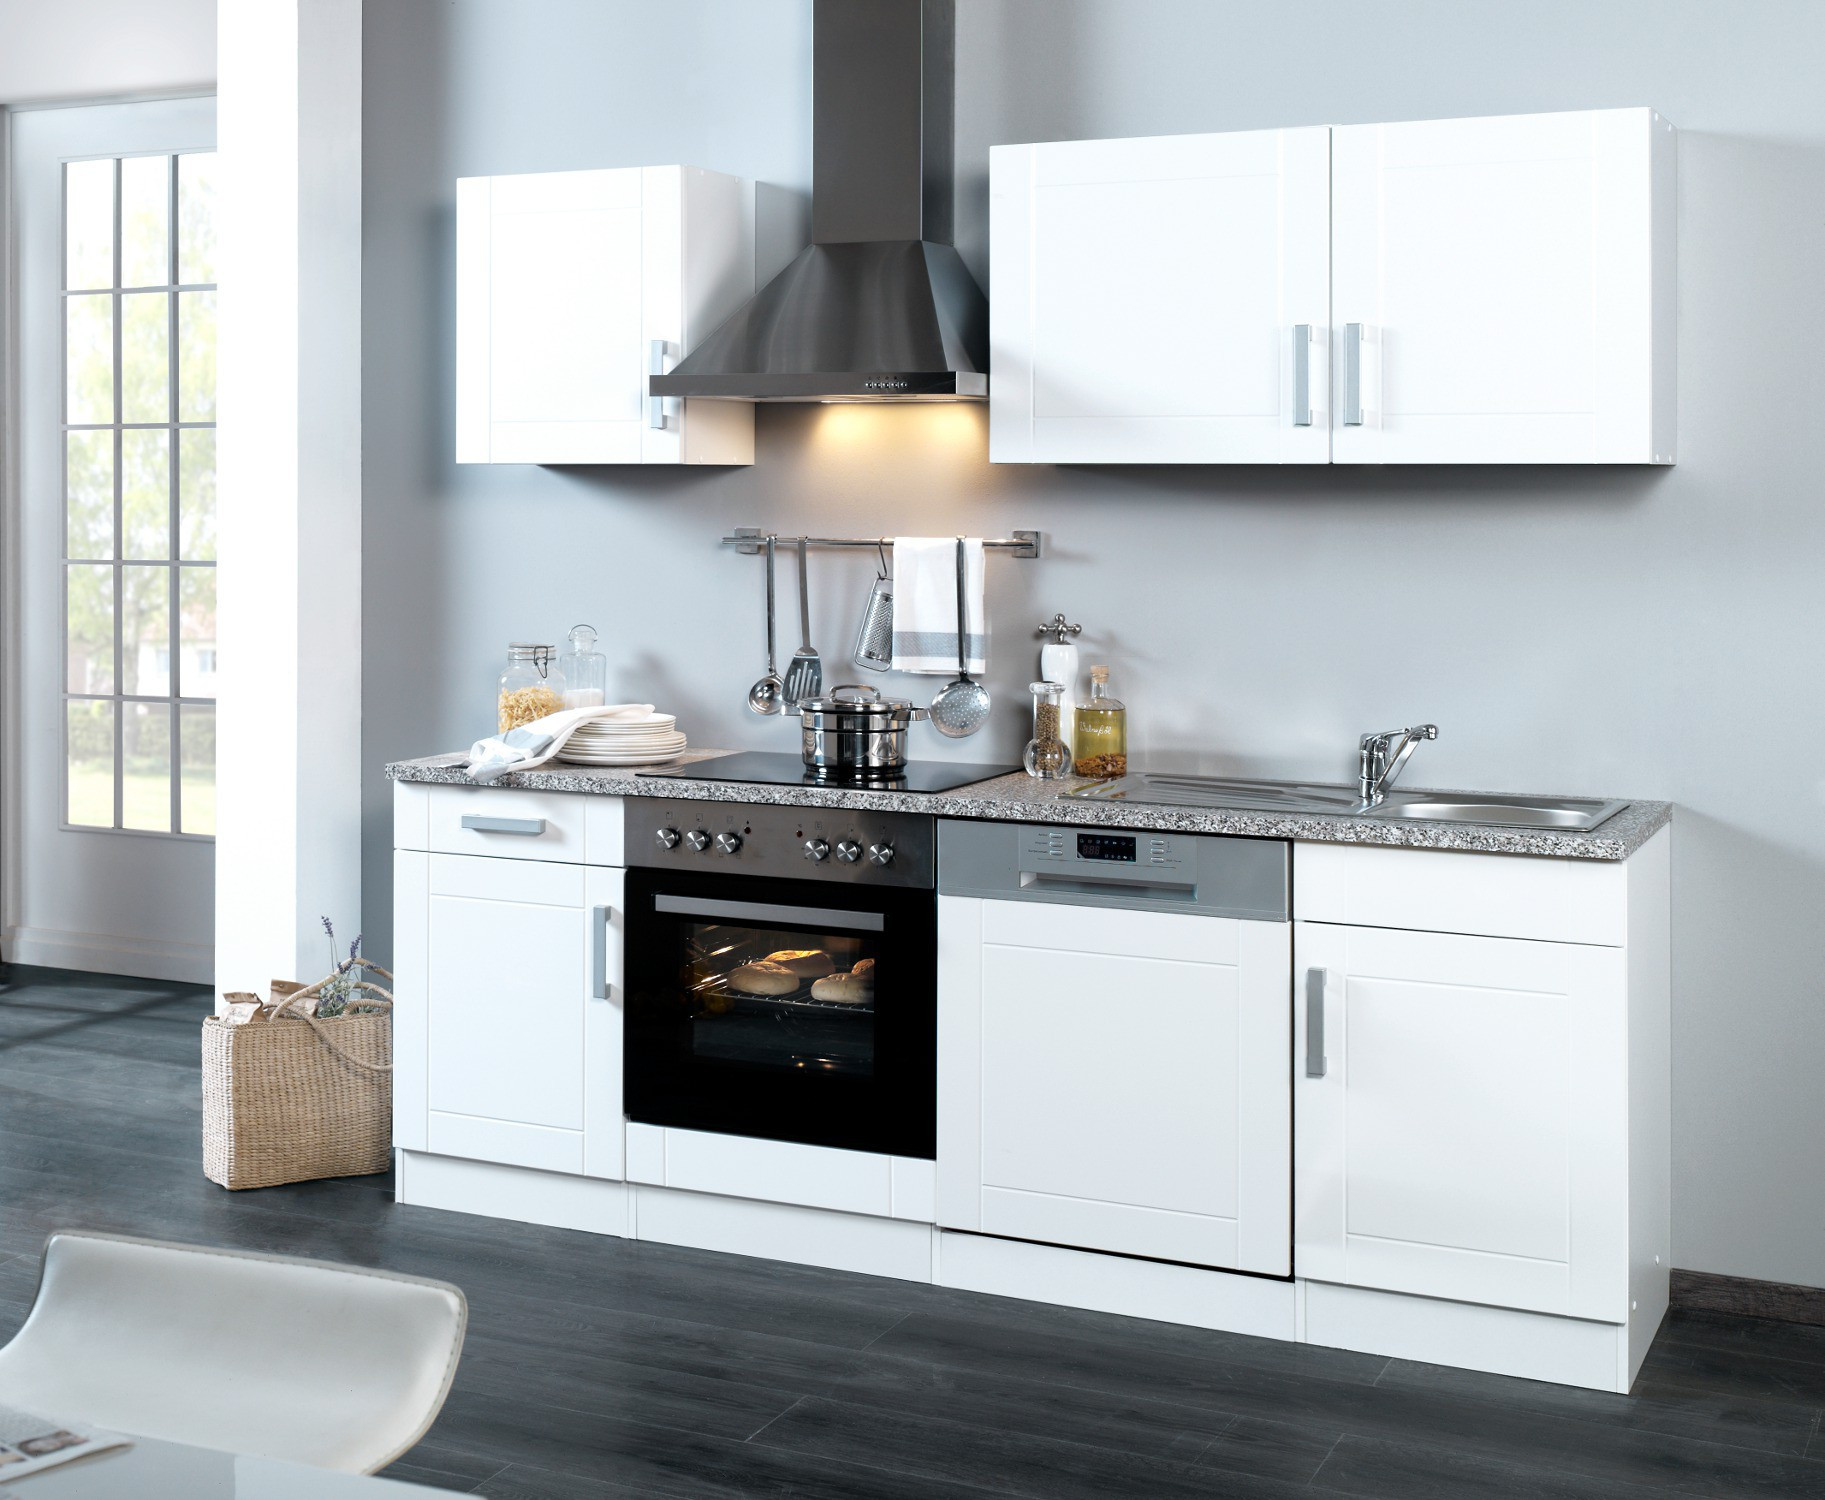 Küche Mit Geräten
 Küchenzeile VAREL Küche mit E Geräten Breite 220 cm